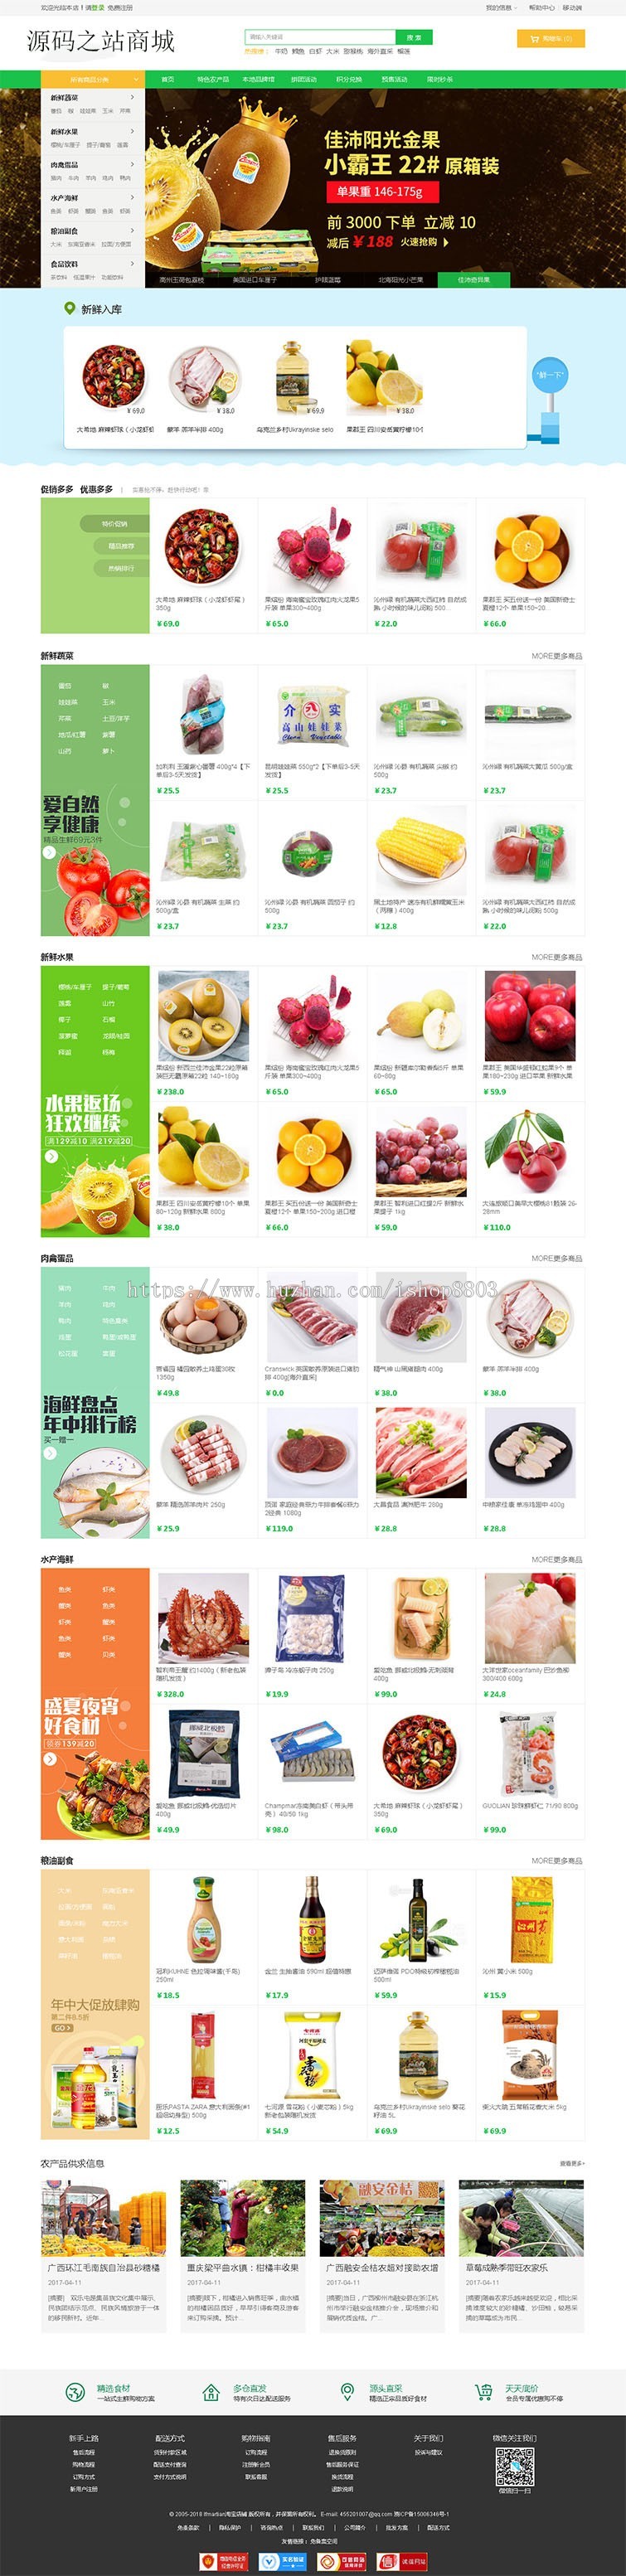 新品ecshop生鲜食品蔬菜水果微分销商城绿色网站源码模板 